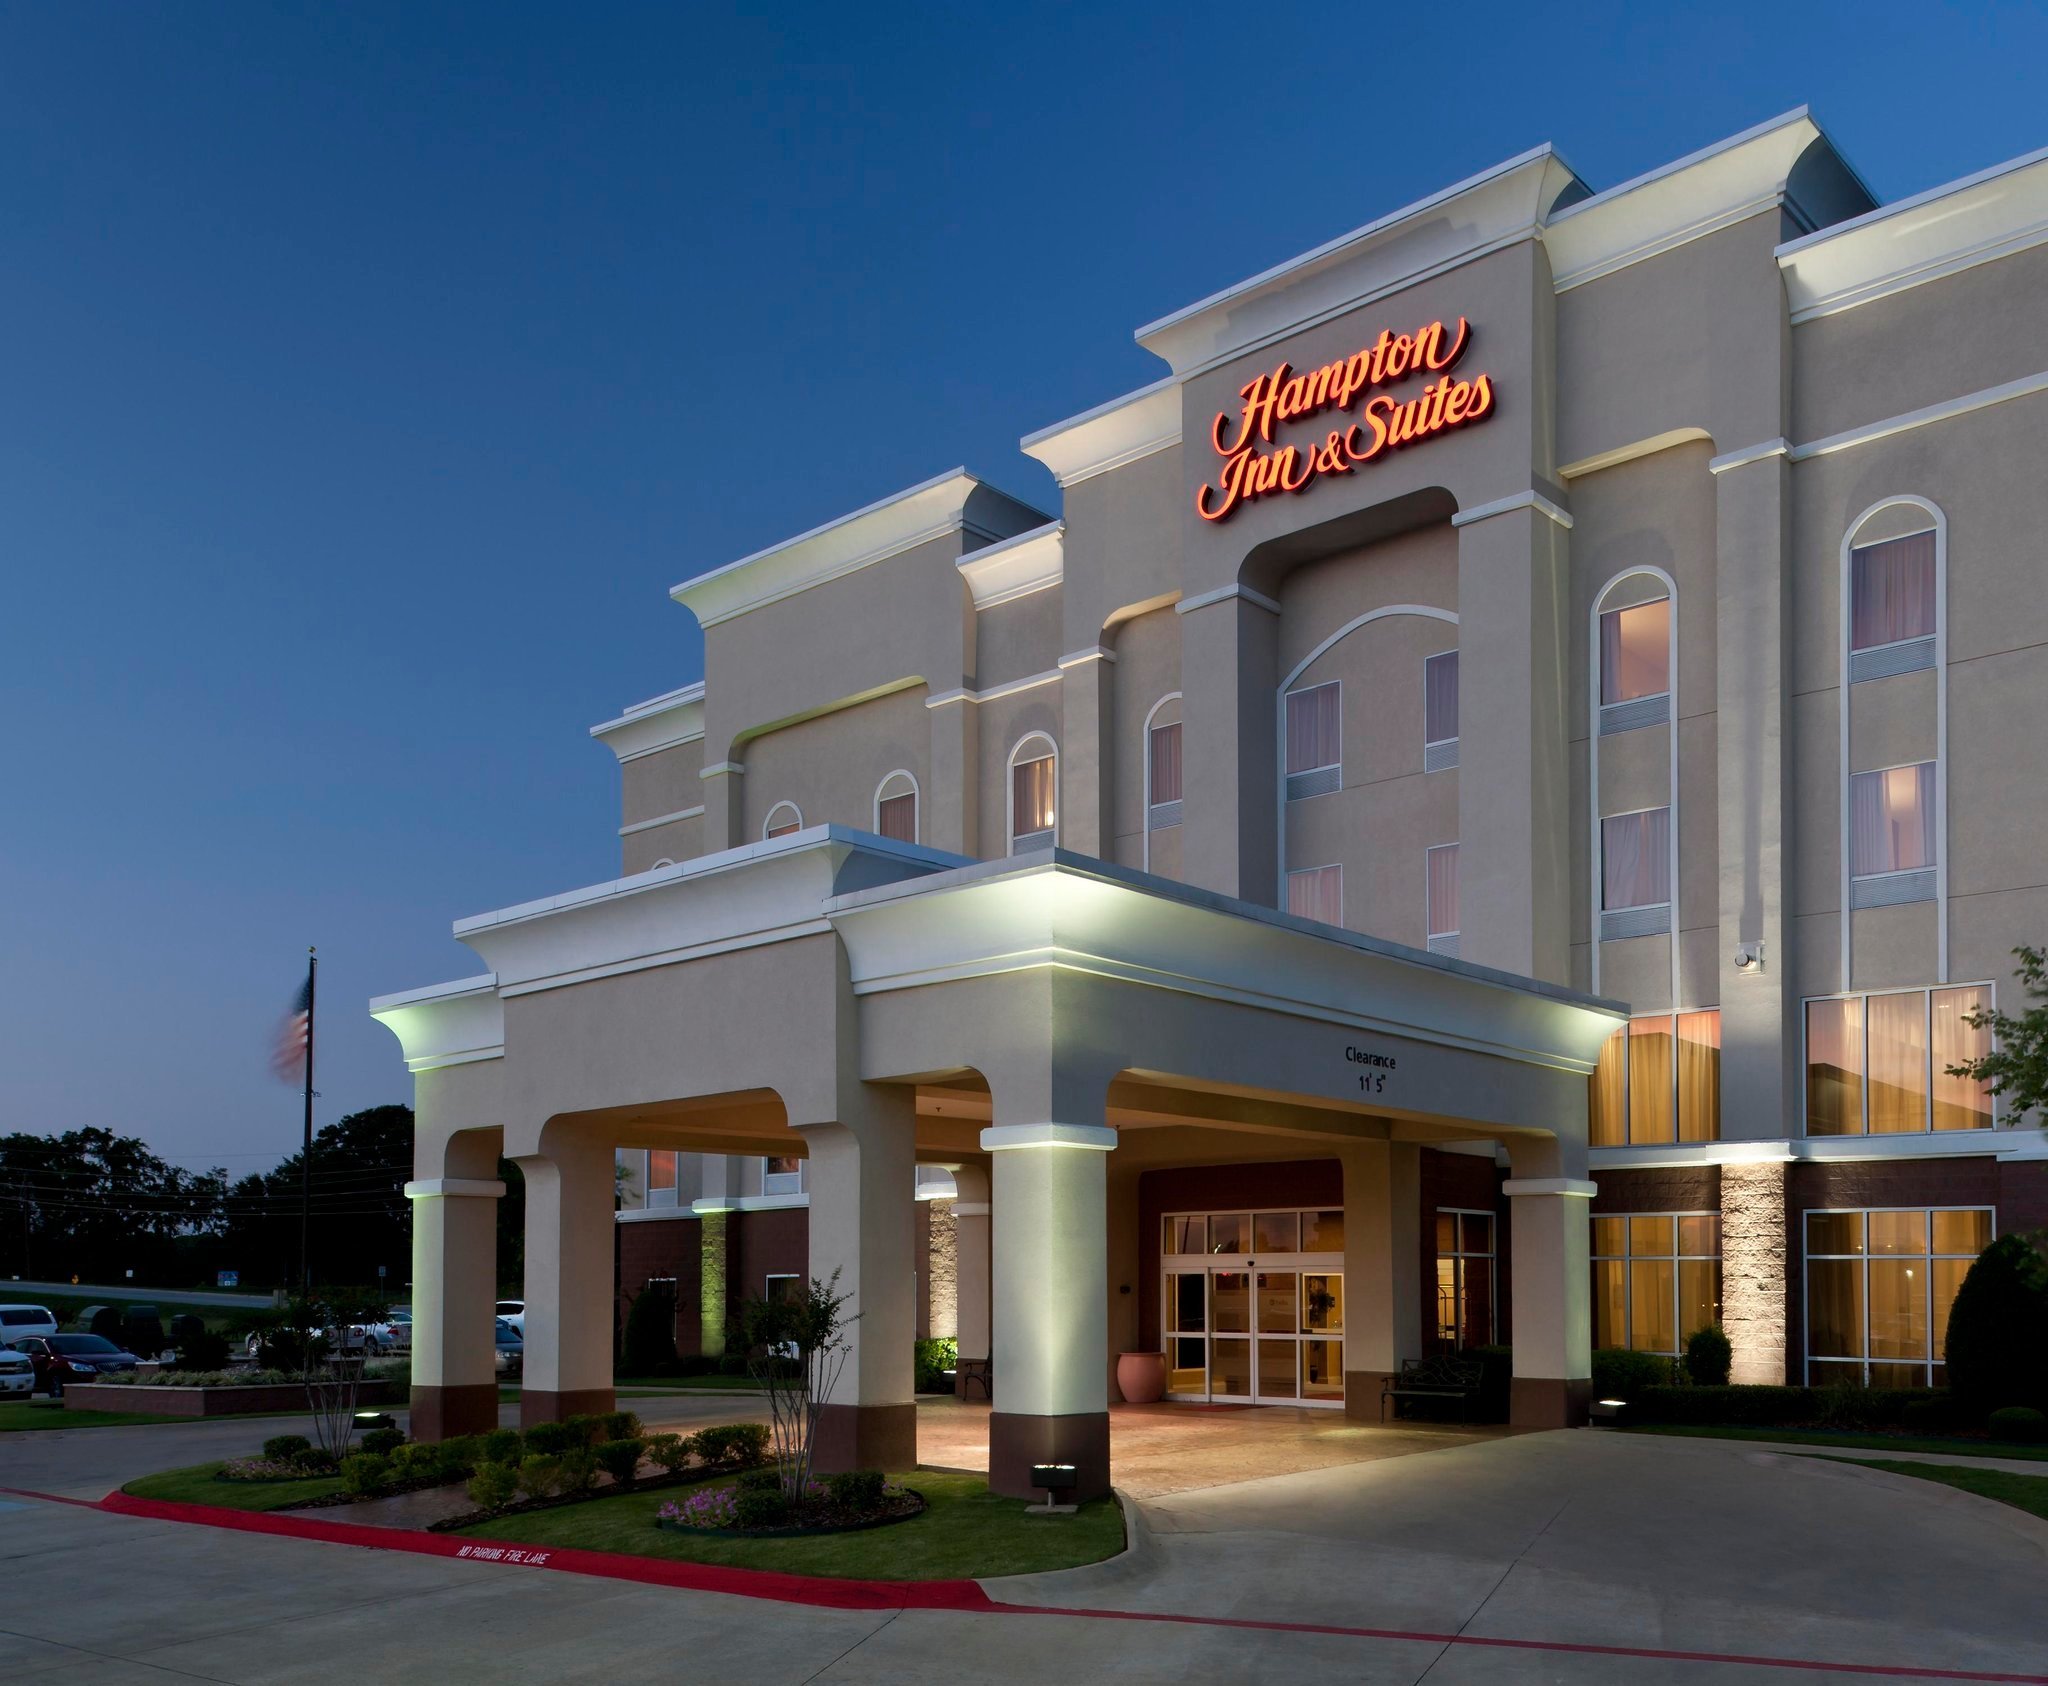 Photo of Hampton Inn & Suites Texarkana, Texarkana, TX